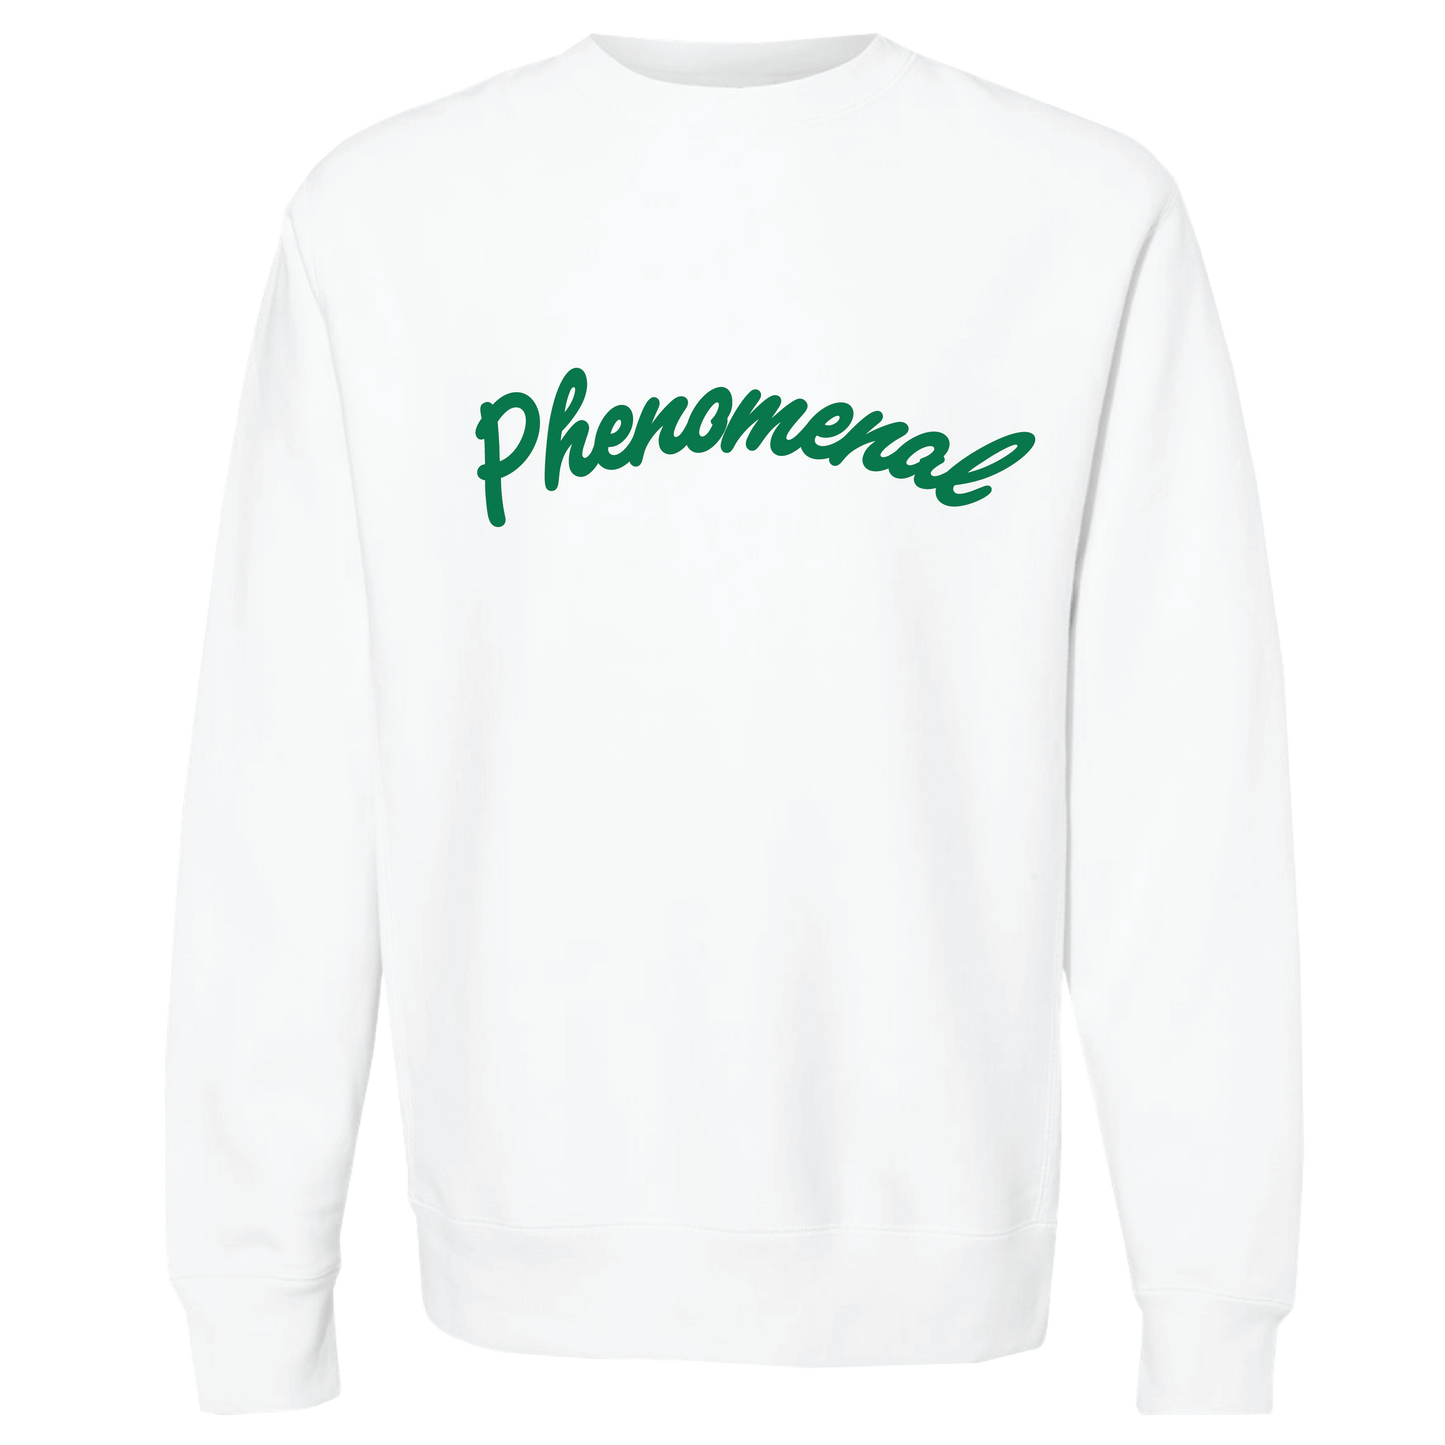 Phenomenal Heavyweight Crewneck Sweatshirt (White/Green)